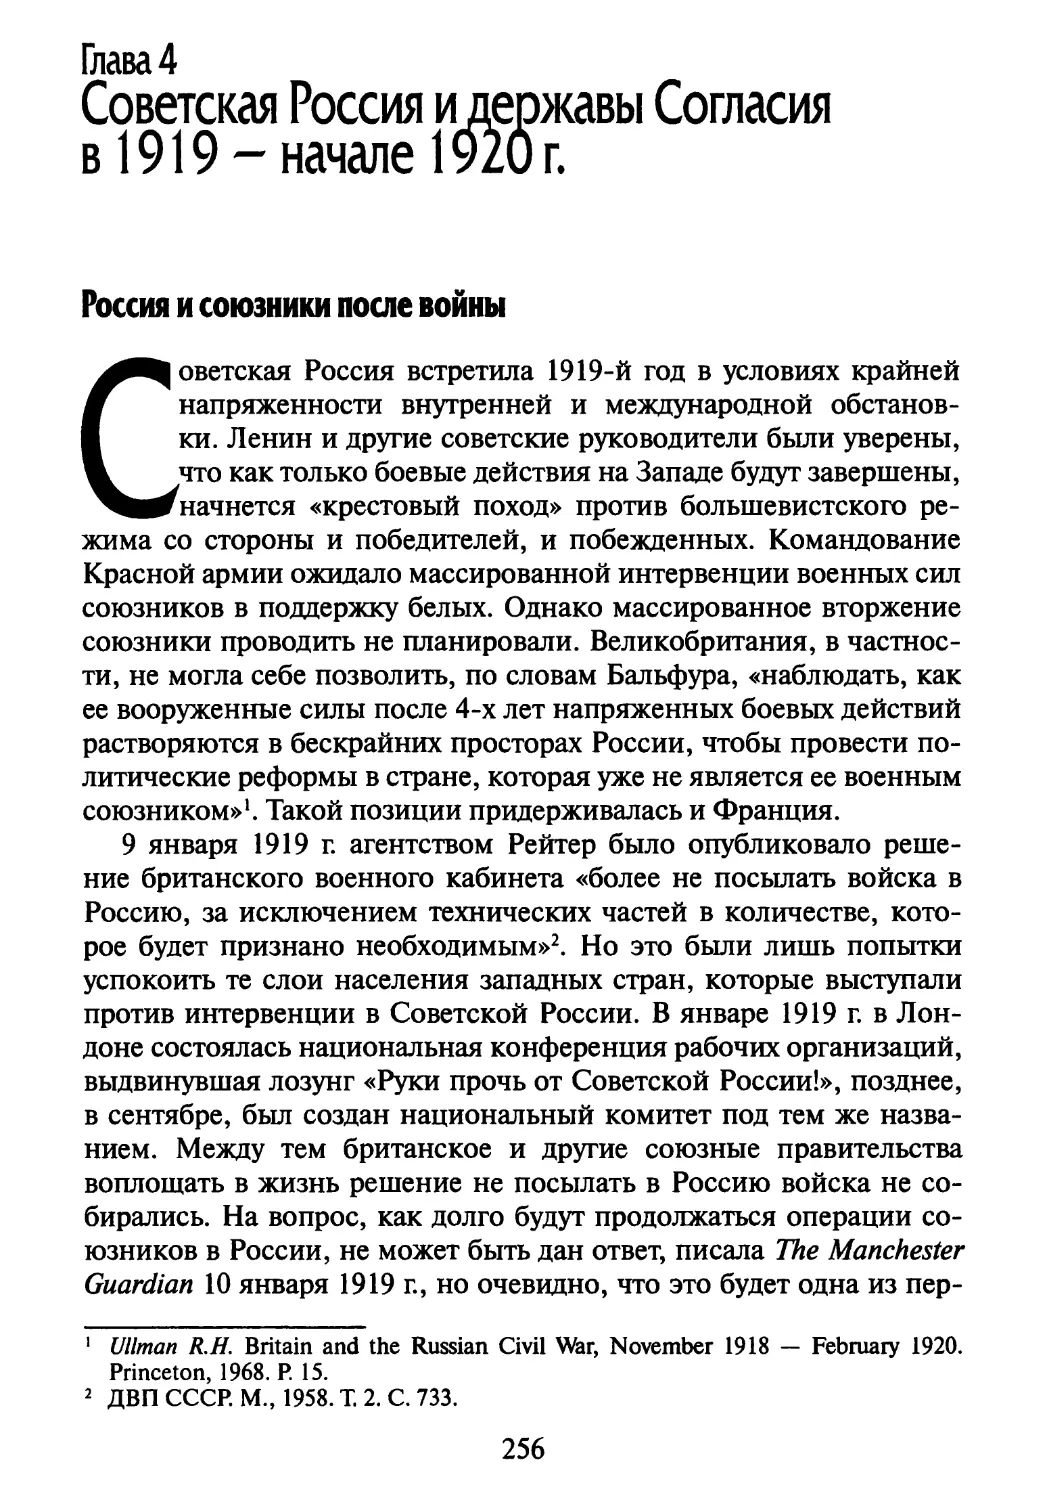 Глава 4. Советская Россия и державы Согласия в 1919 — начале 1920 г
Россия и союзники после войны